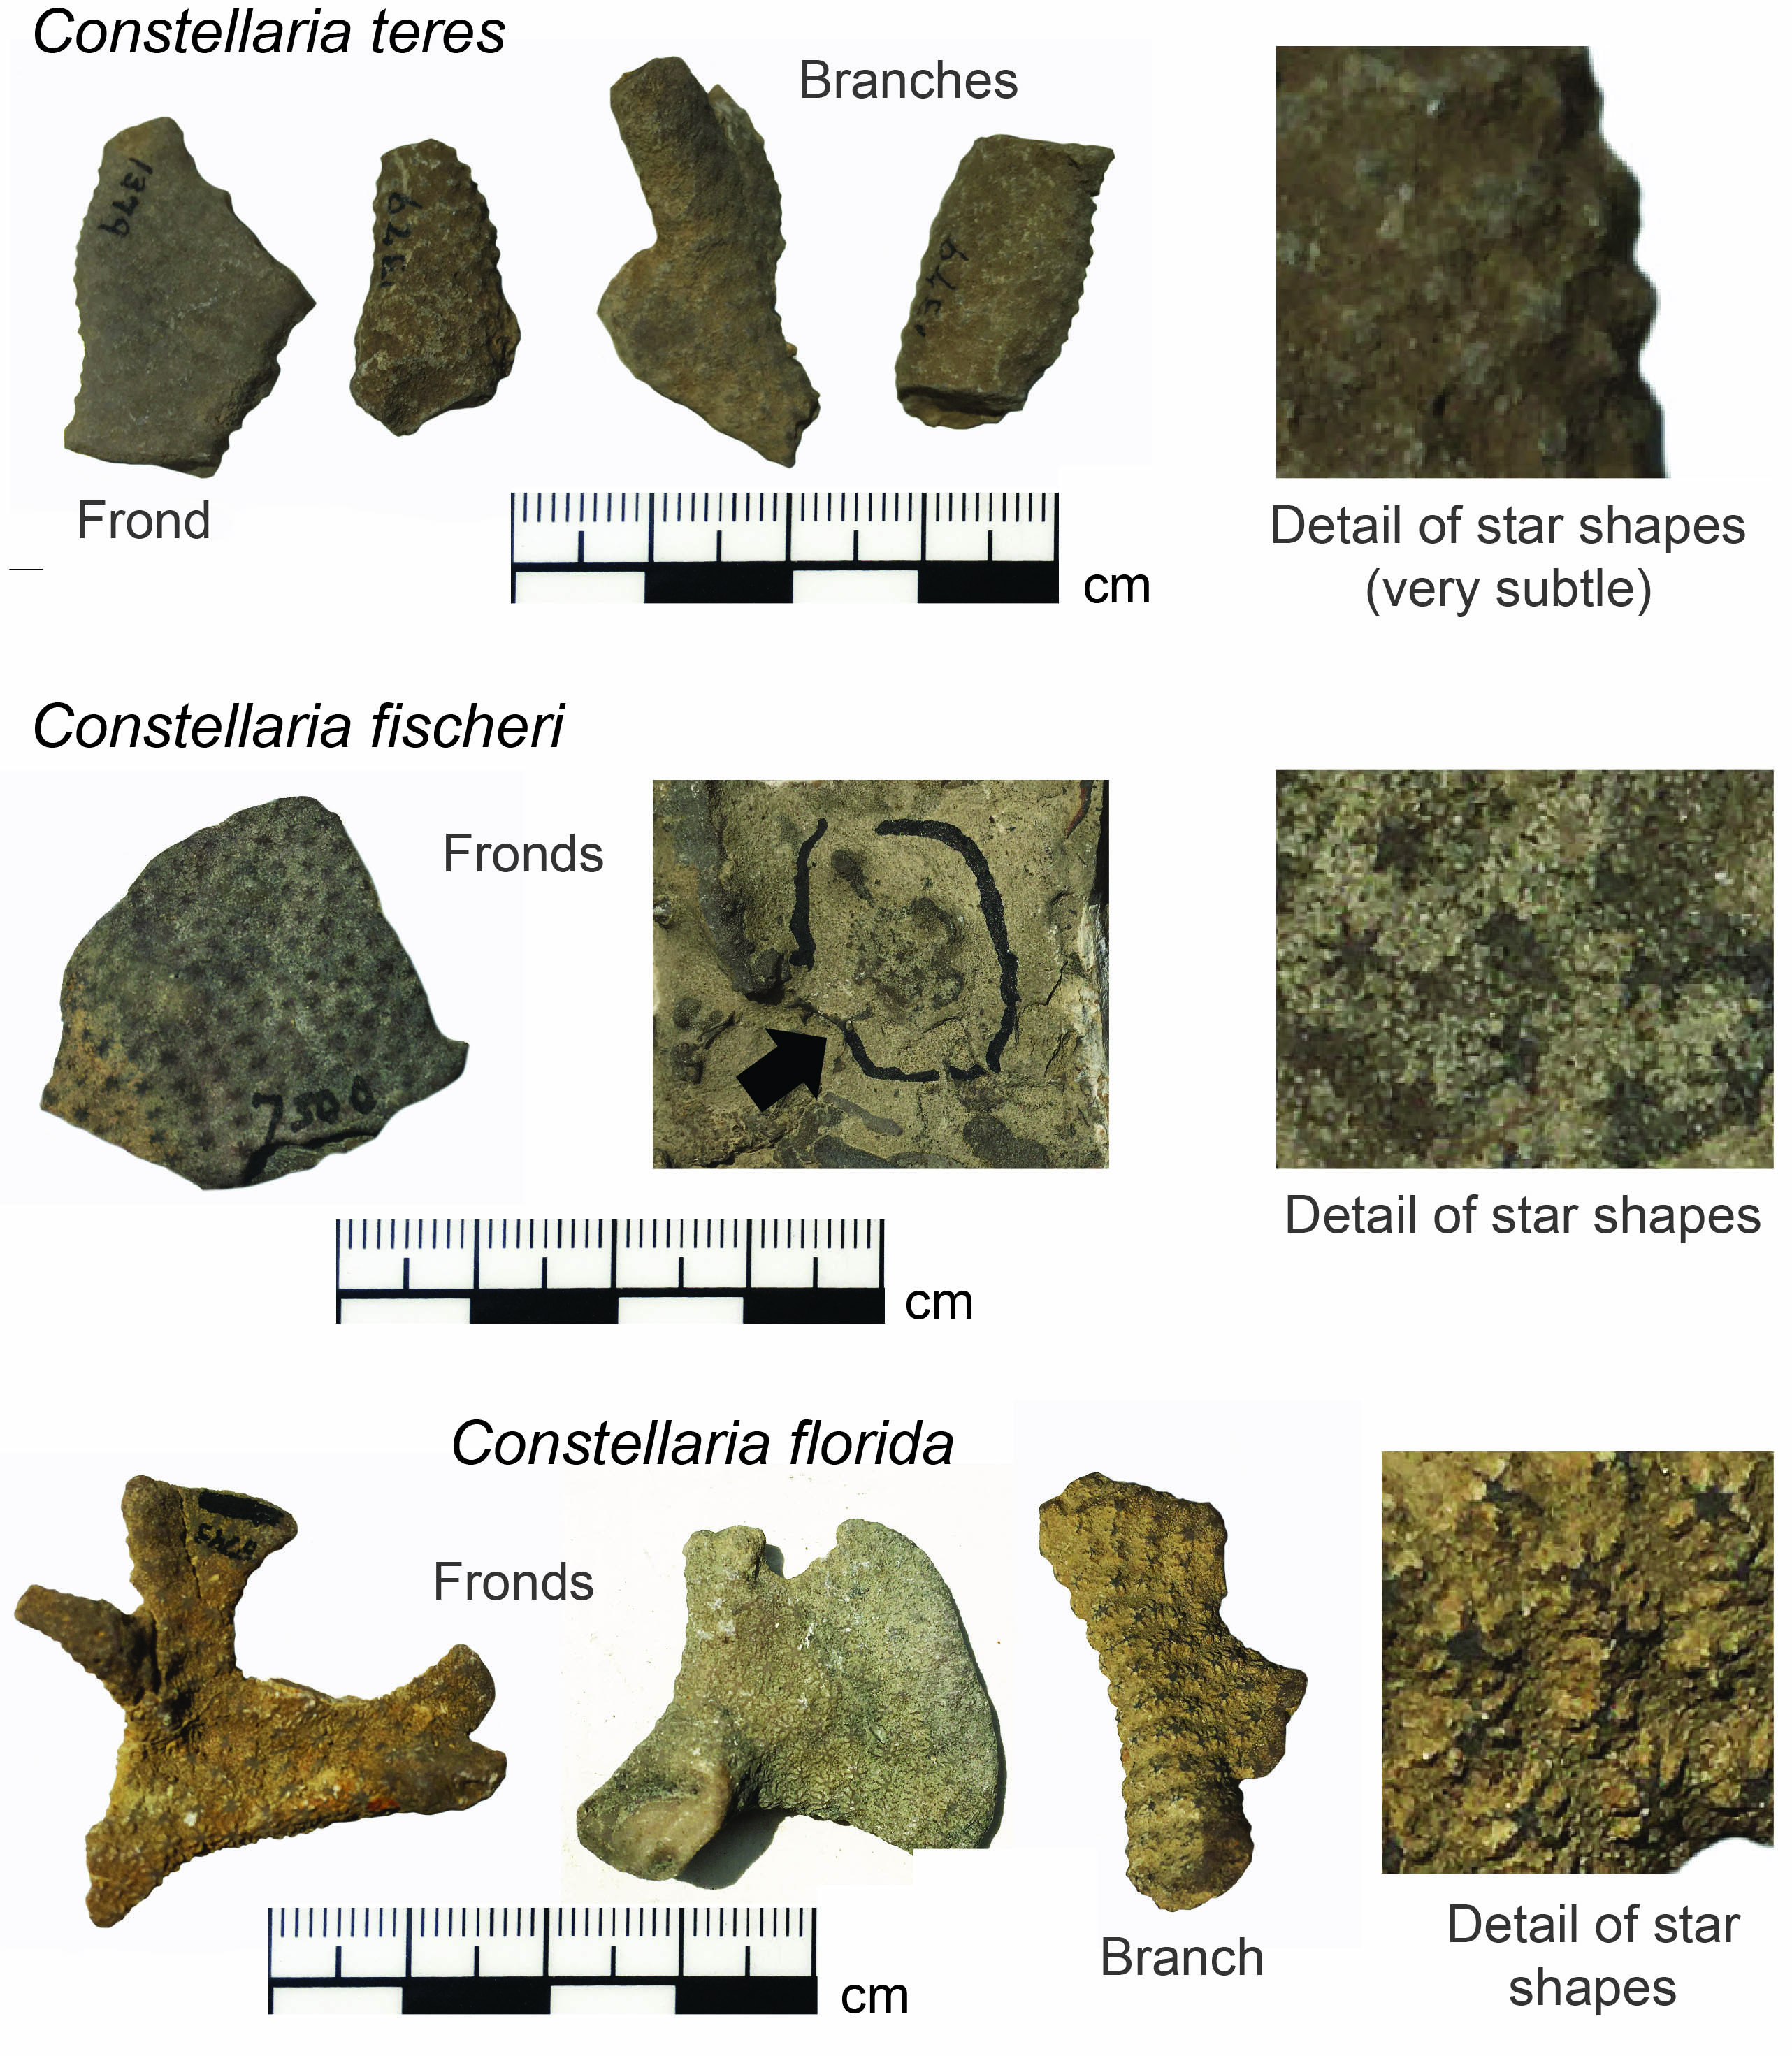 Images of various Constellaria species